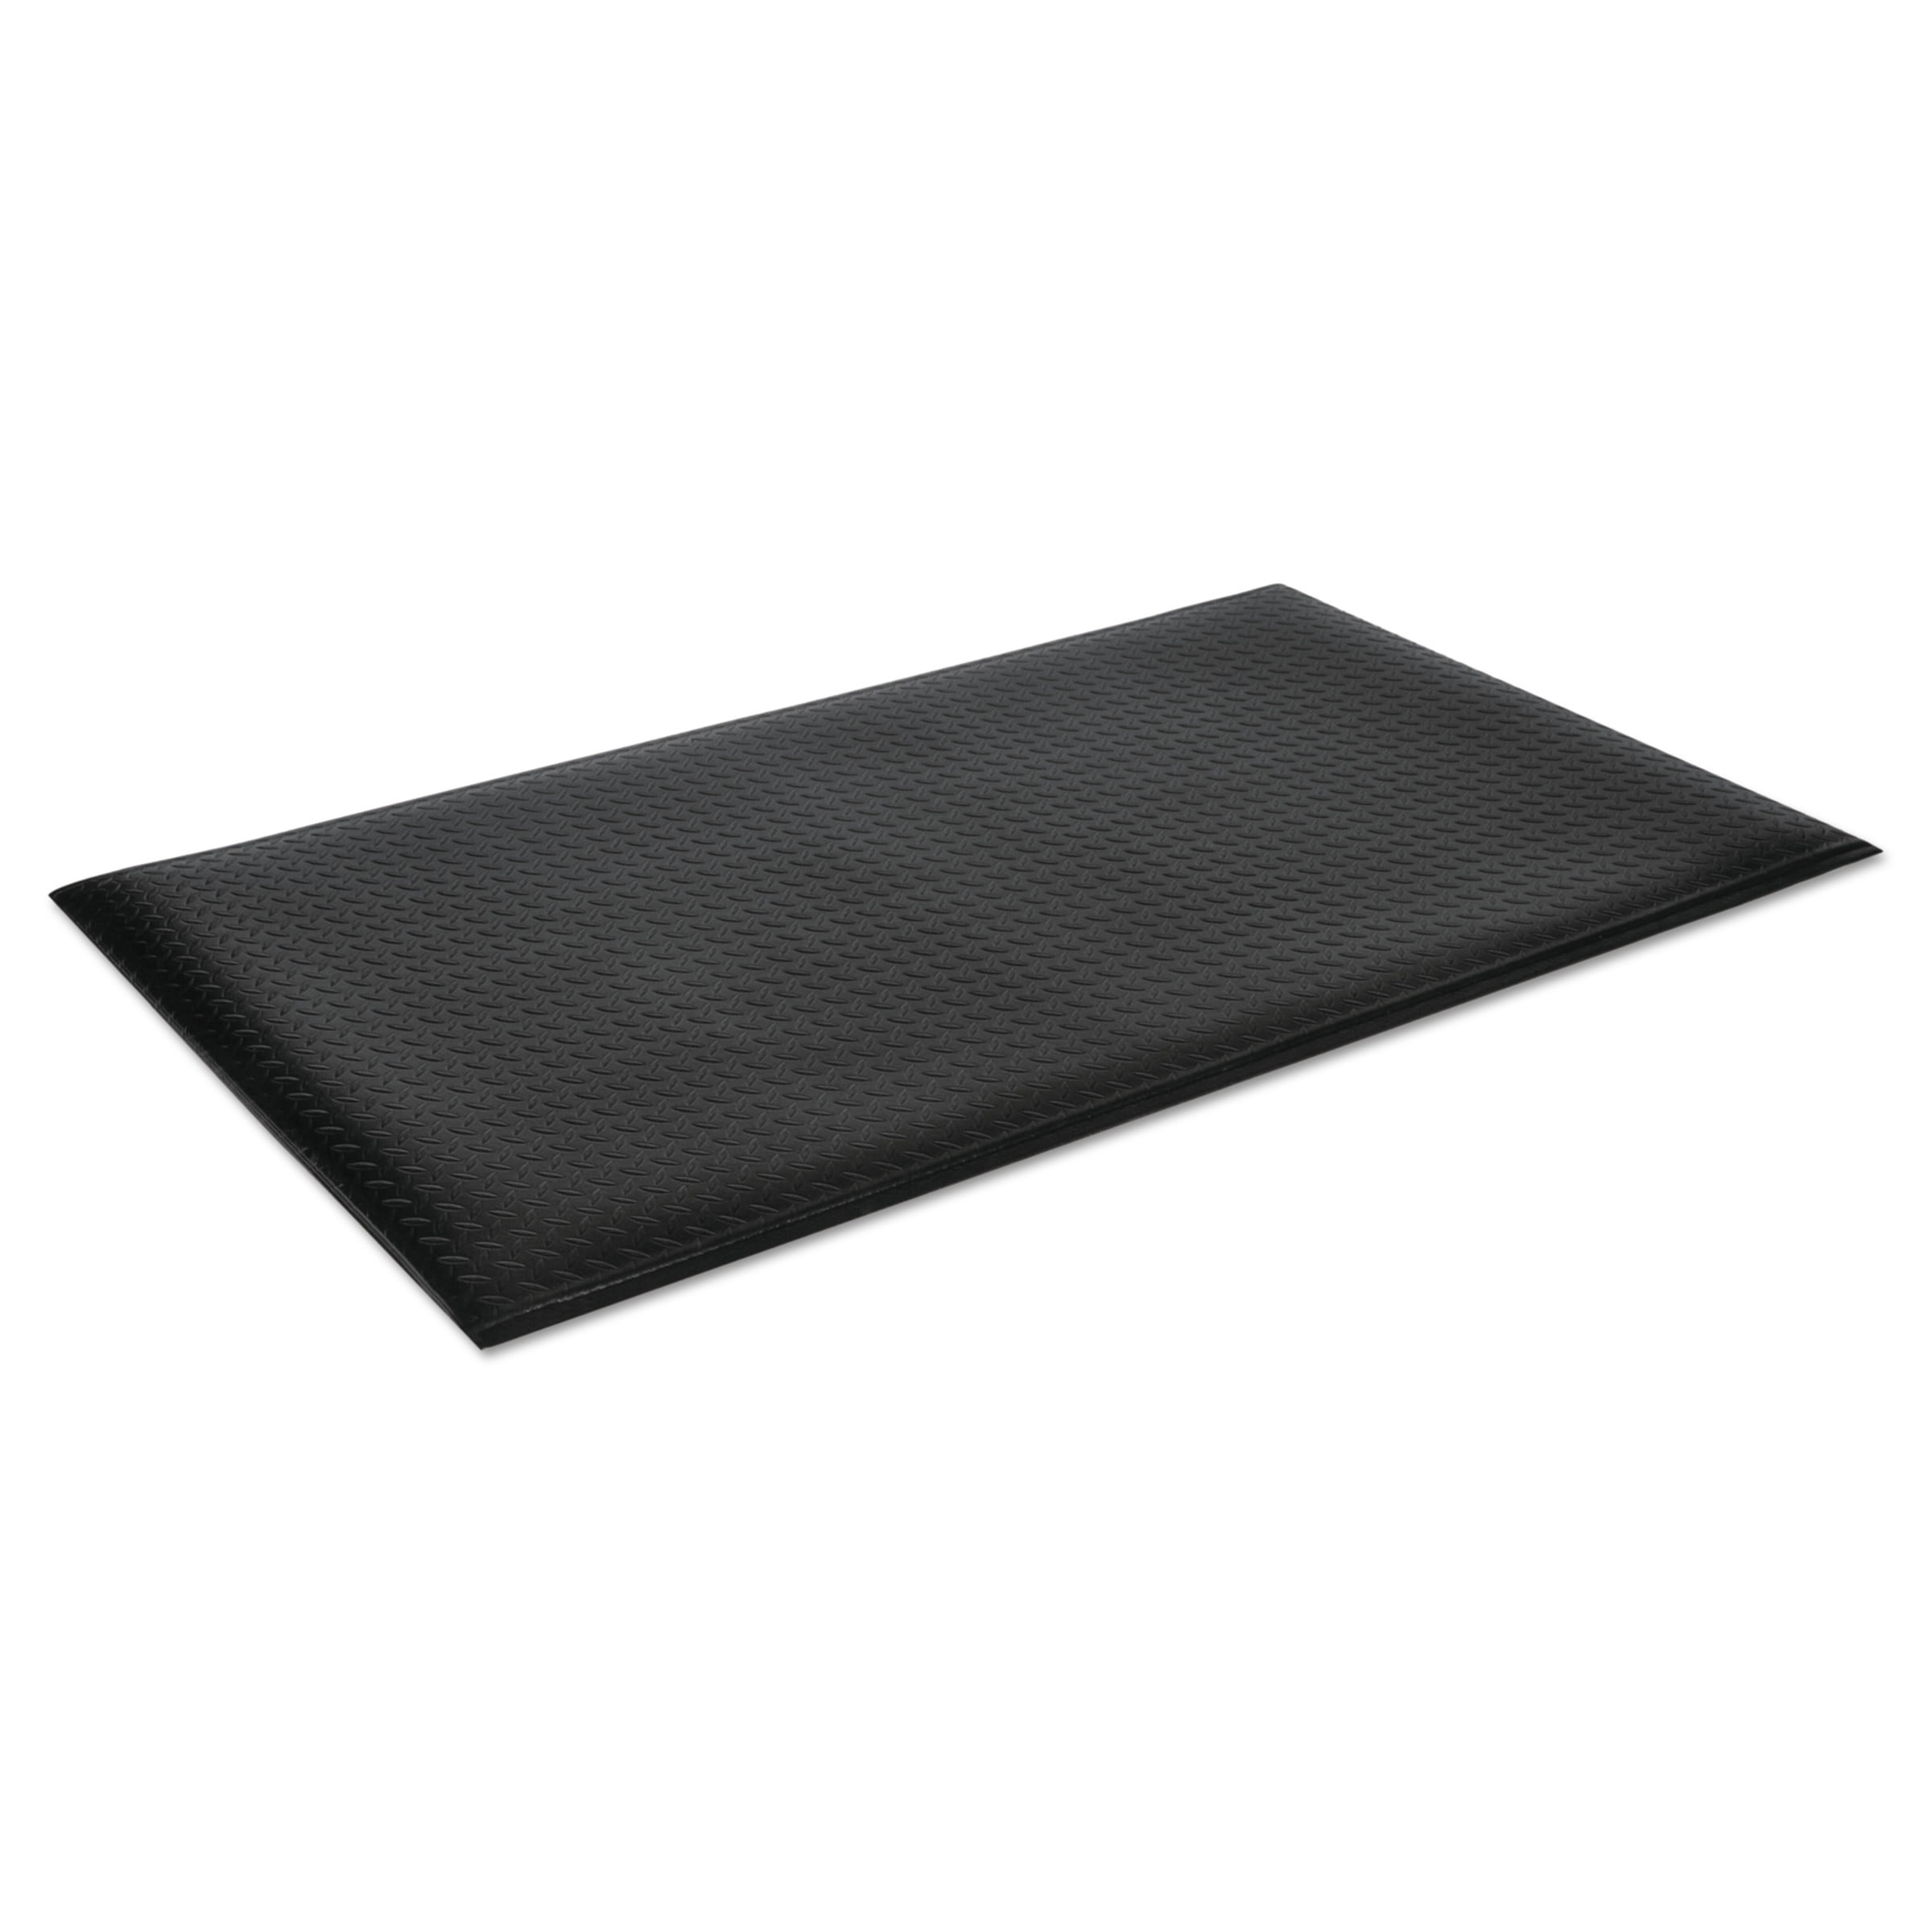 Guardian Flex Step Rubber Anti-Fatigue Mat Polypropylene 24 x 36 Black 24020300 